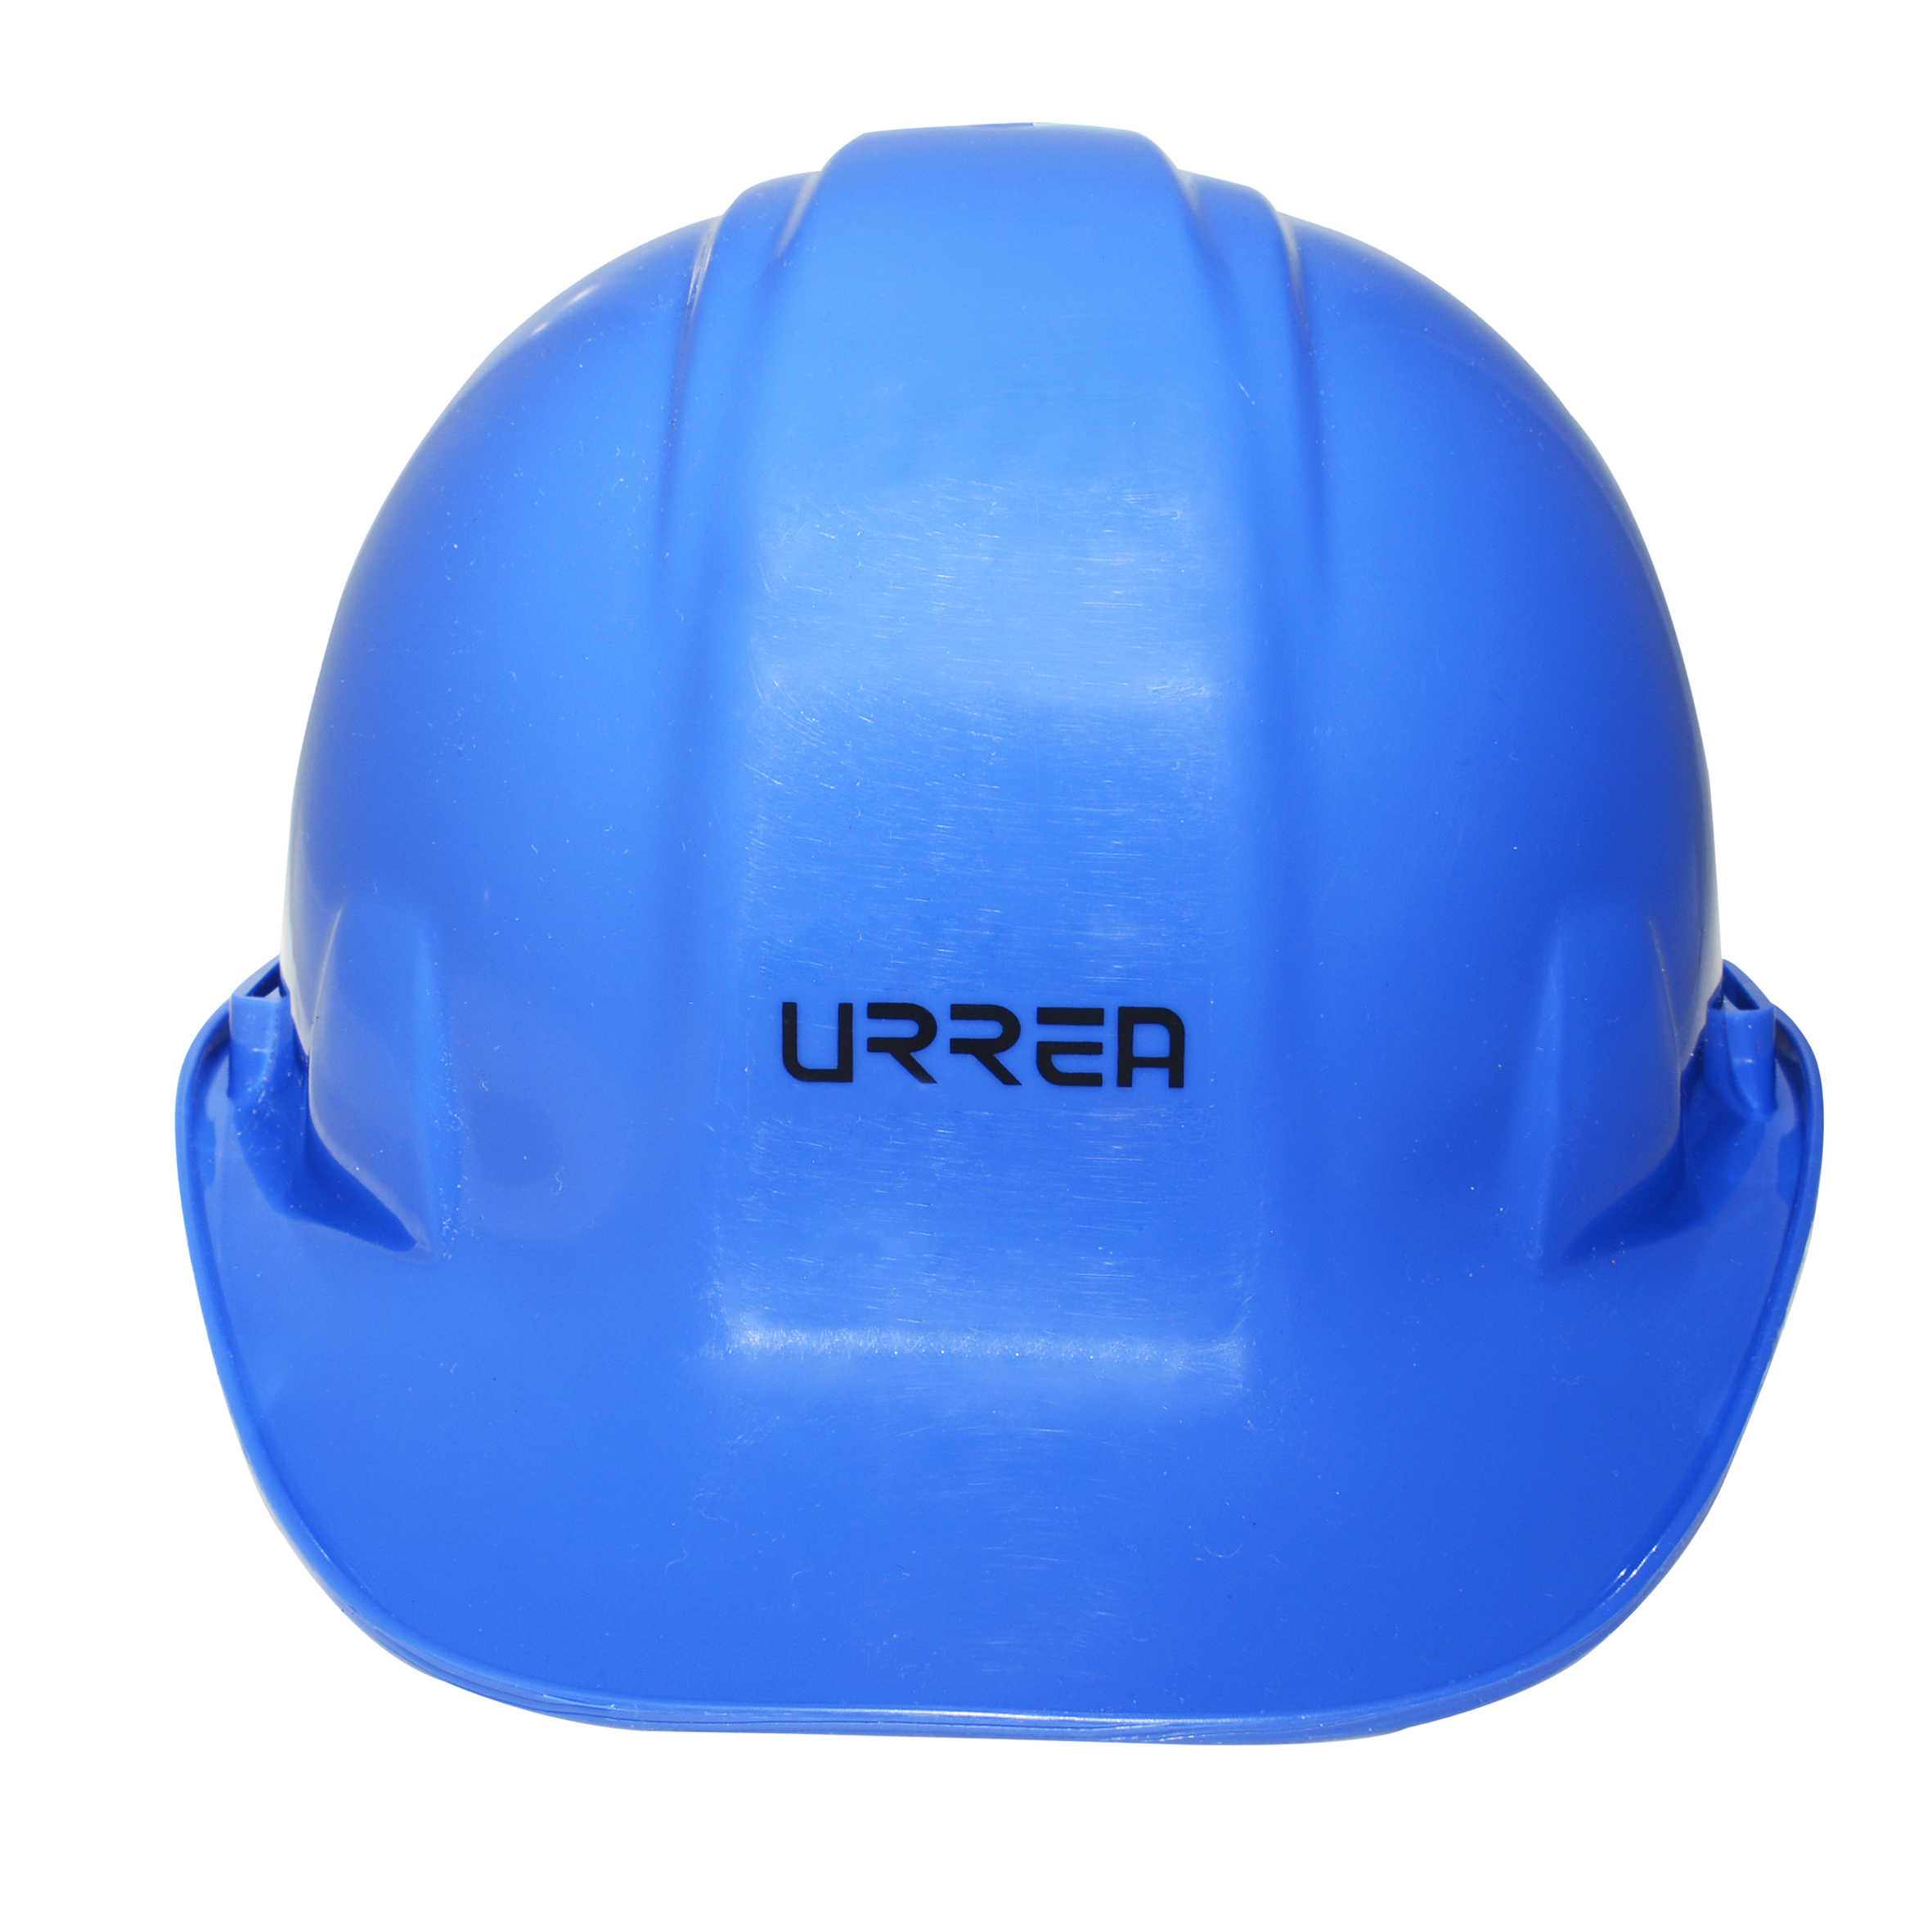 Imagen para Casco de seguridad con ajustede intervalos color azul de Grupo Urrea